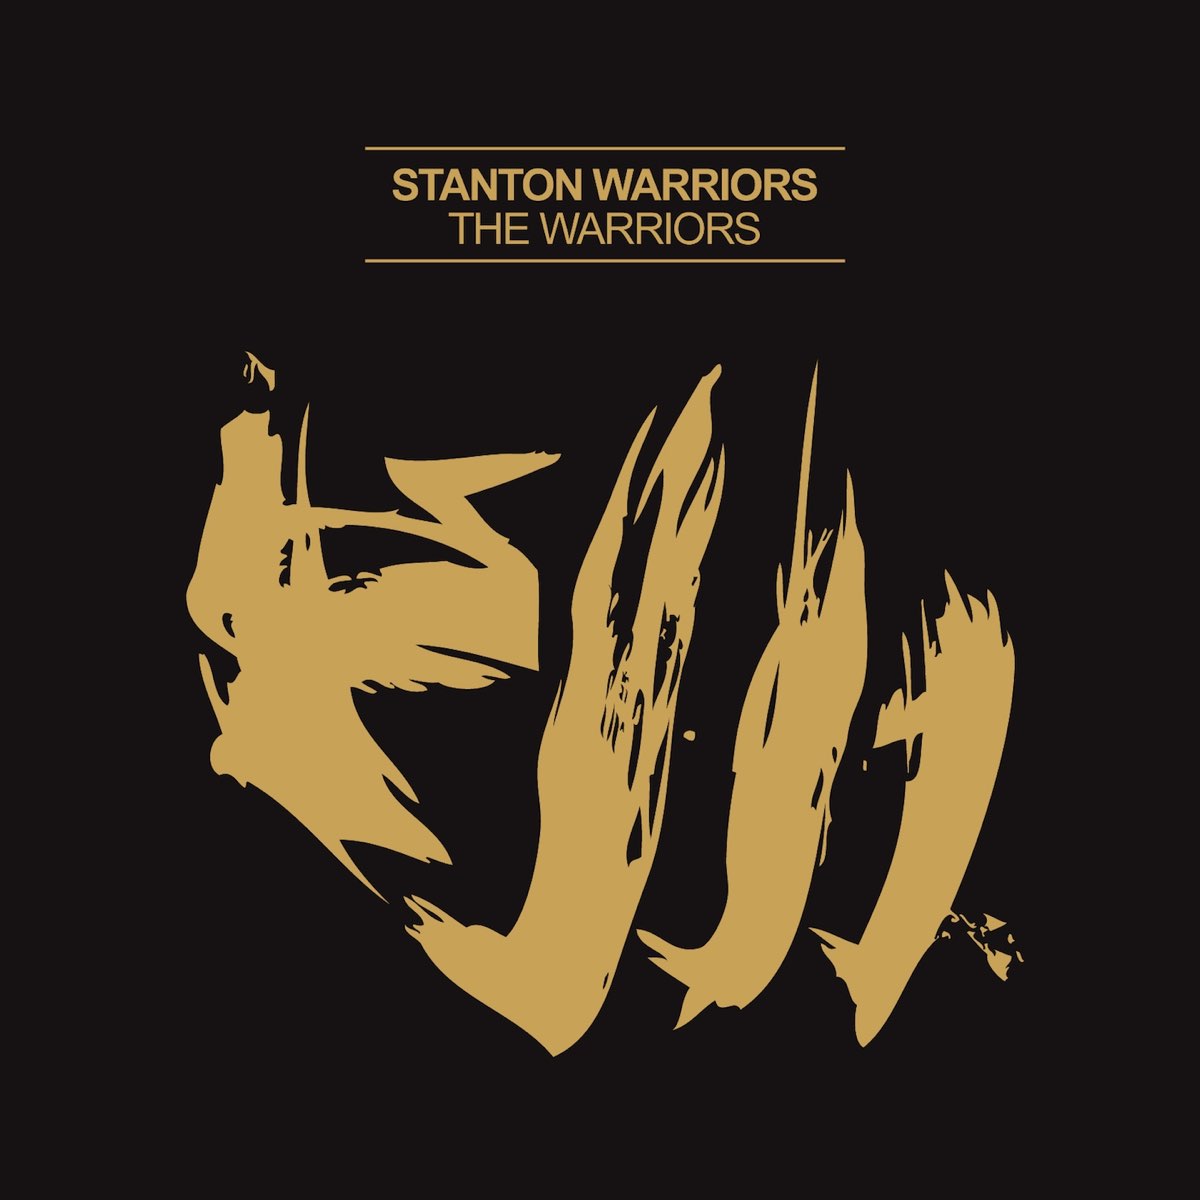 Stanton warriors. Stanton Warriors - Precinct. Stanton Warriors - 2011 the Warriors. Stanton Warriors логотипы.